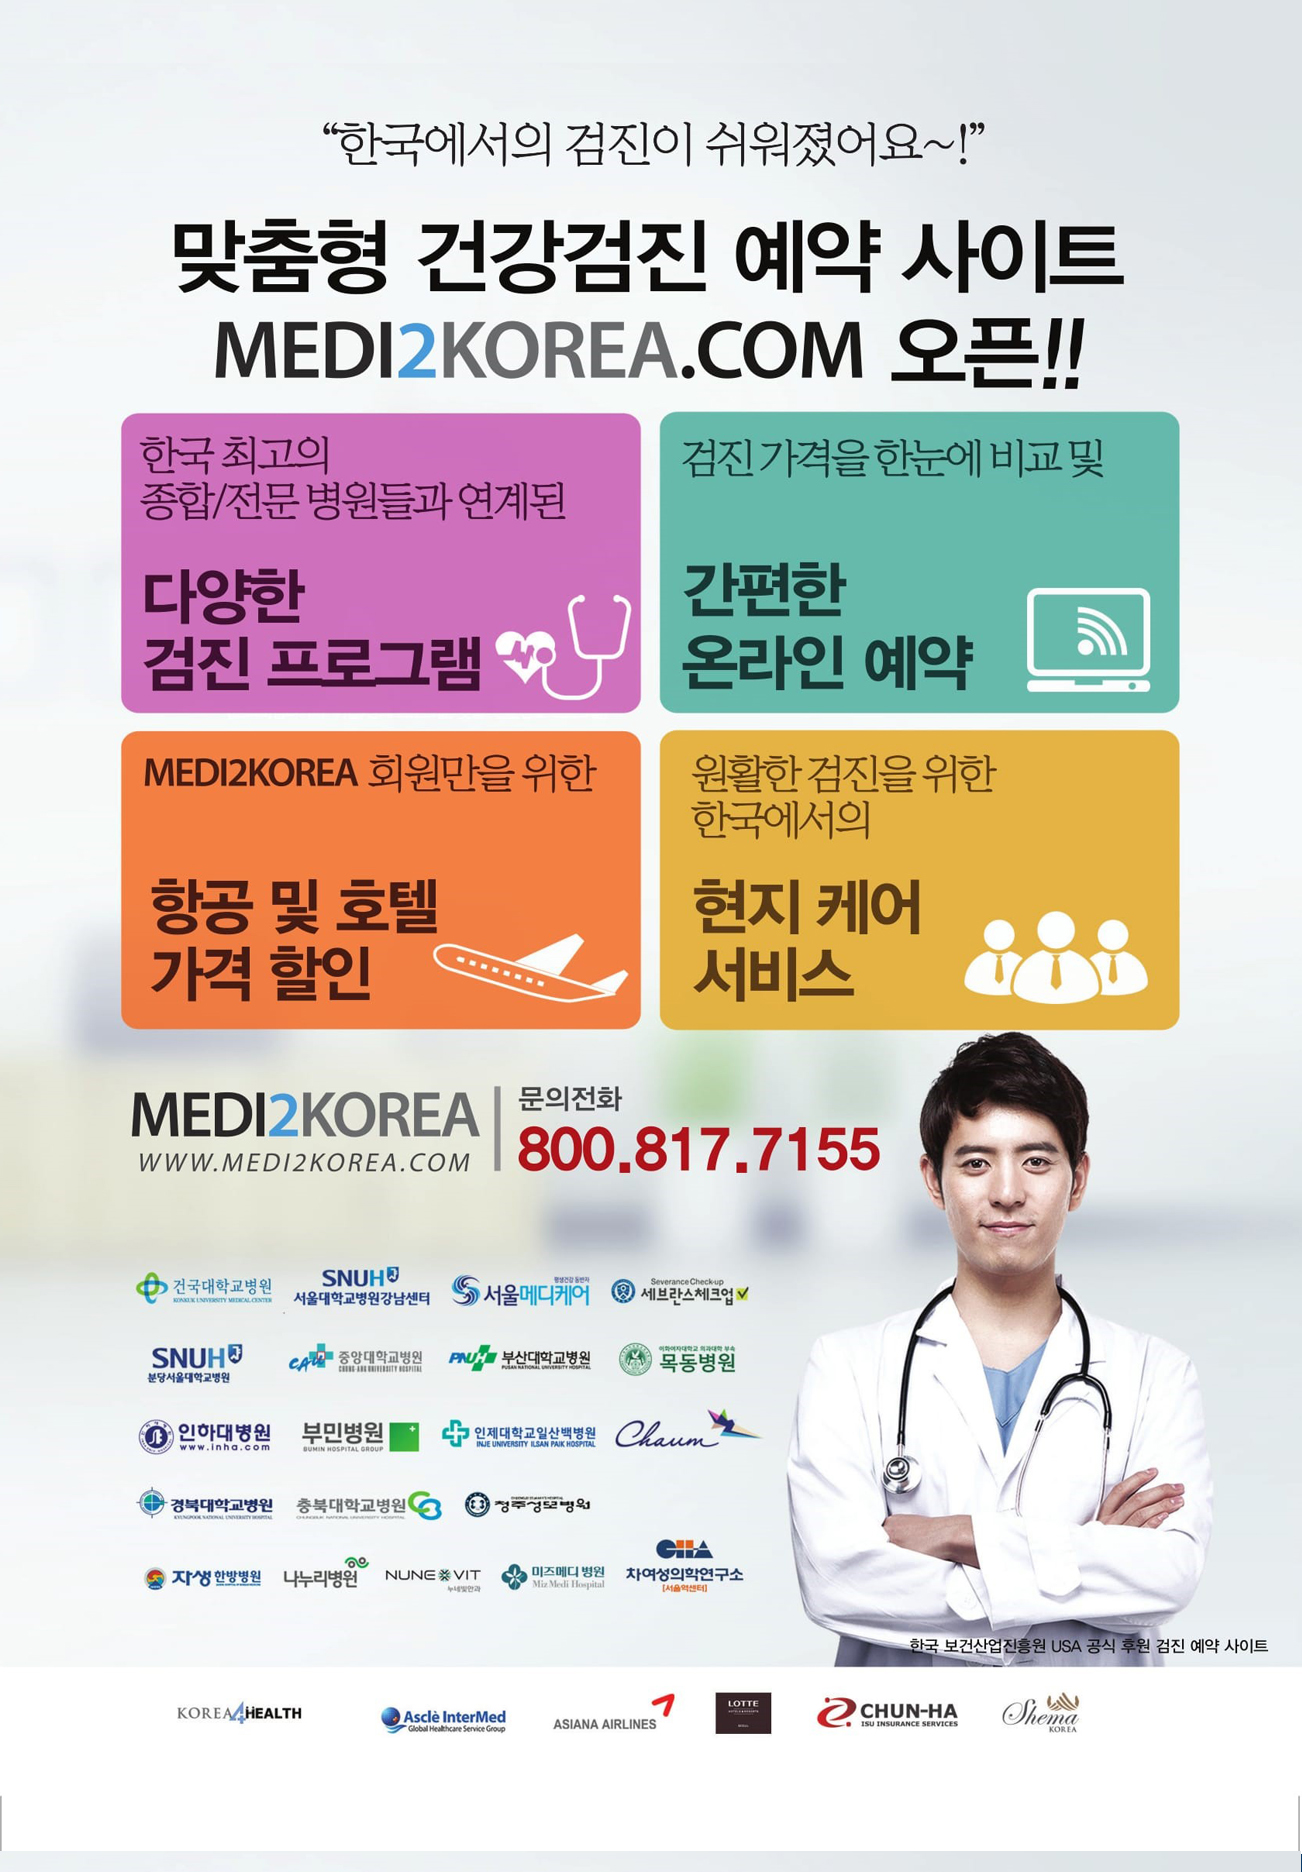 Medi2Korea - reservation